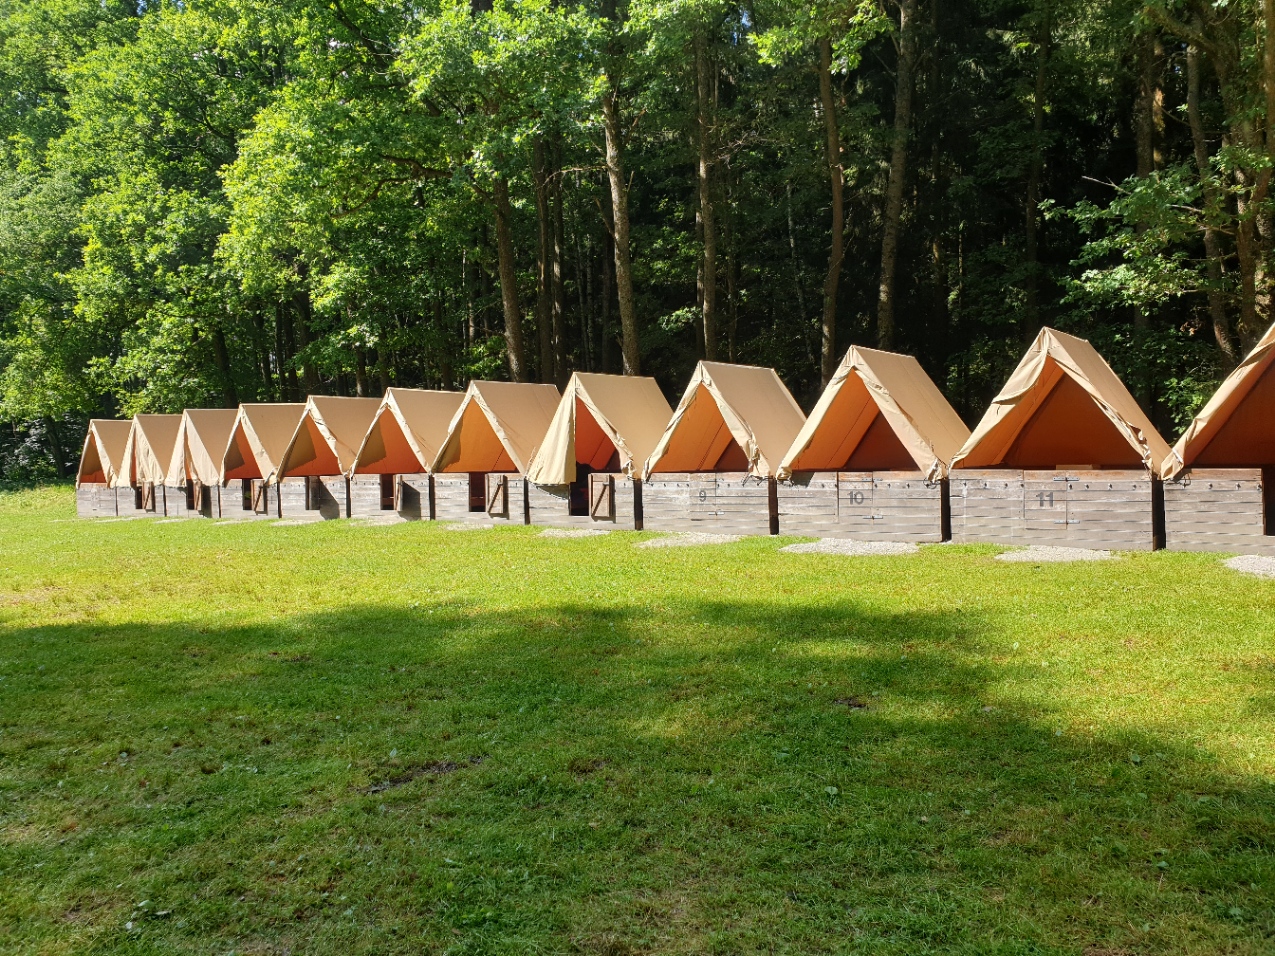 Podsadové stany na táborové základně Kačlehy.